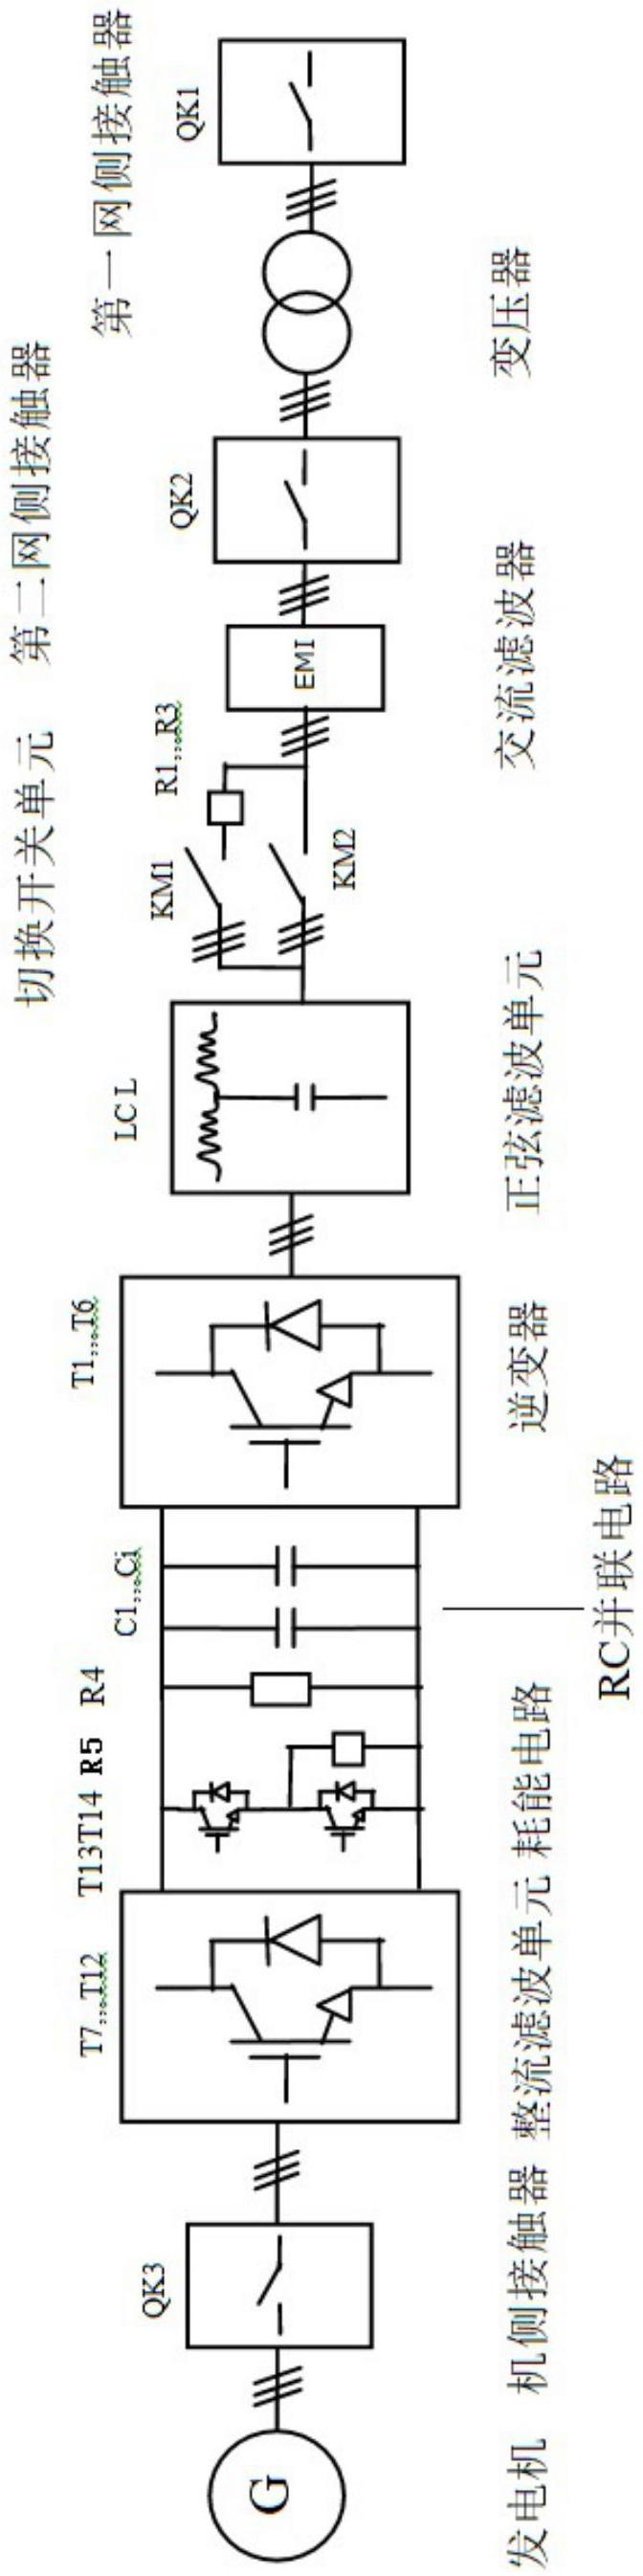 大功率高频永磁发电系统变流装置的制作方法